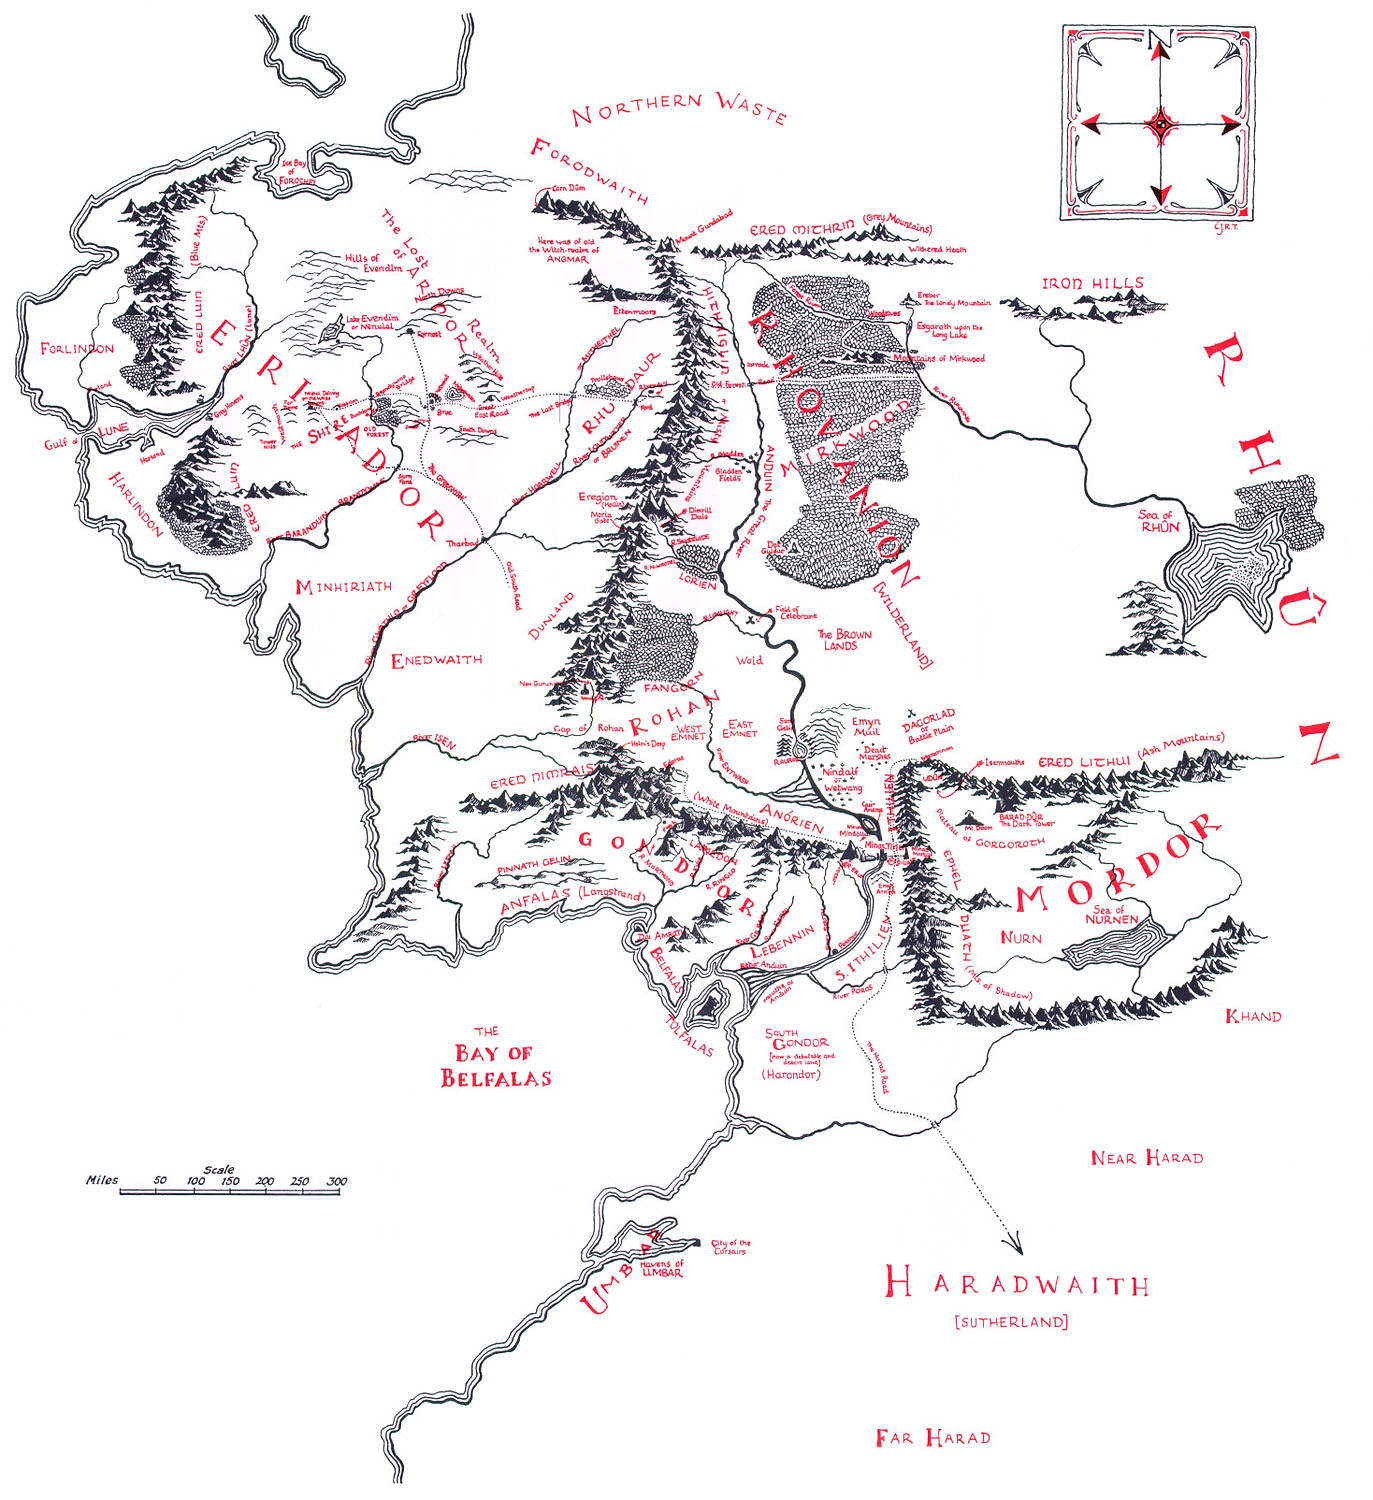 Christopher Tolkien | The Middle Earth, 3st age (La Terre du Milieu au 3e âge)